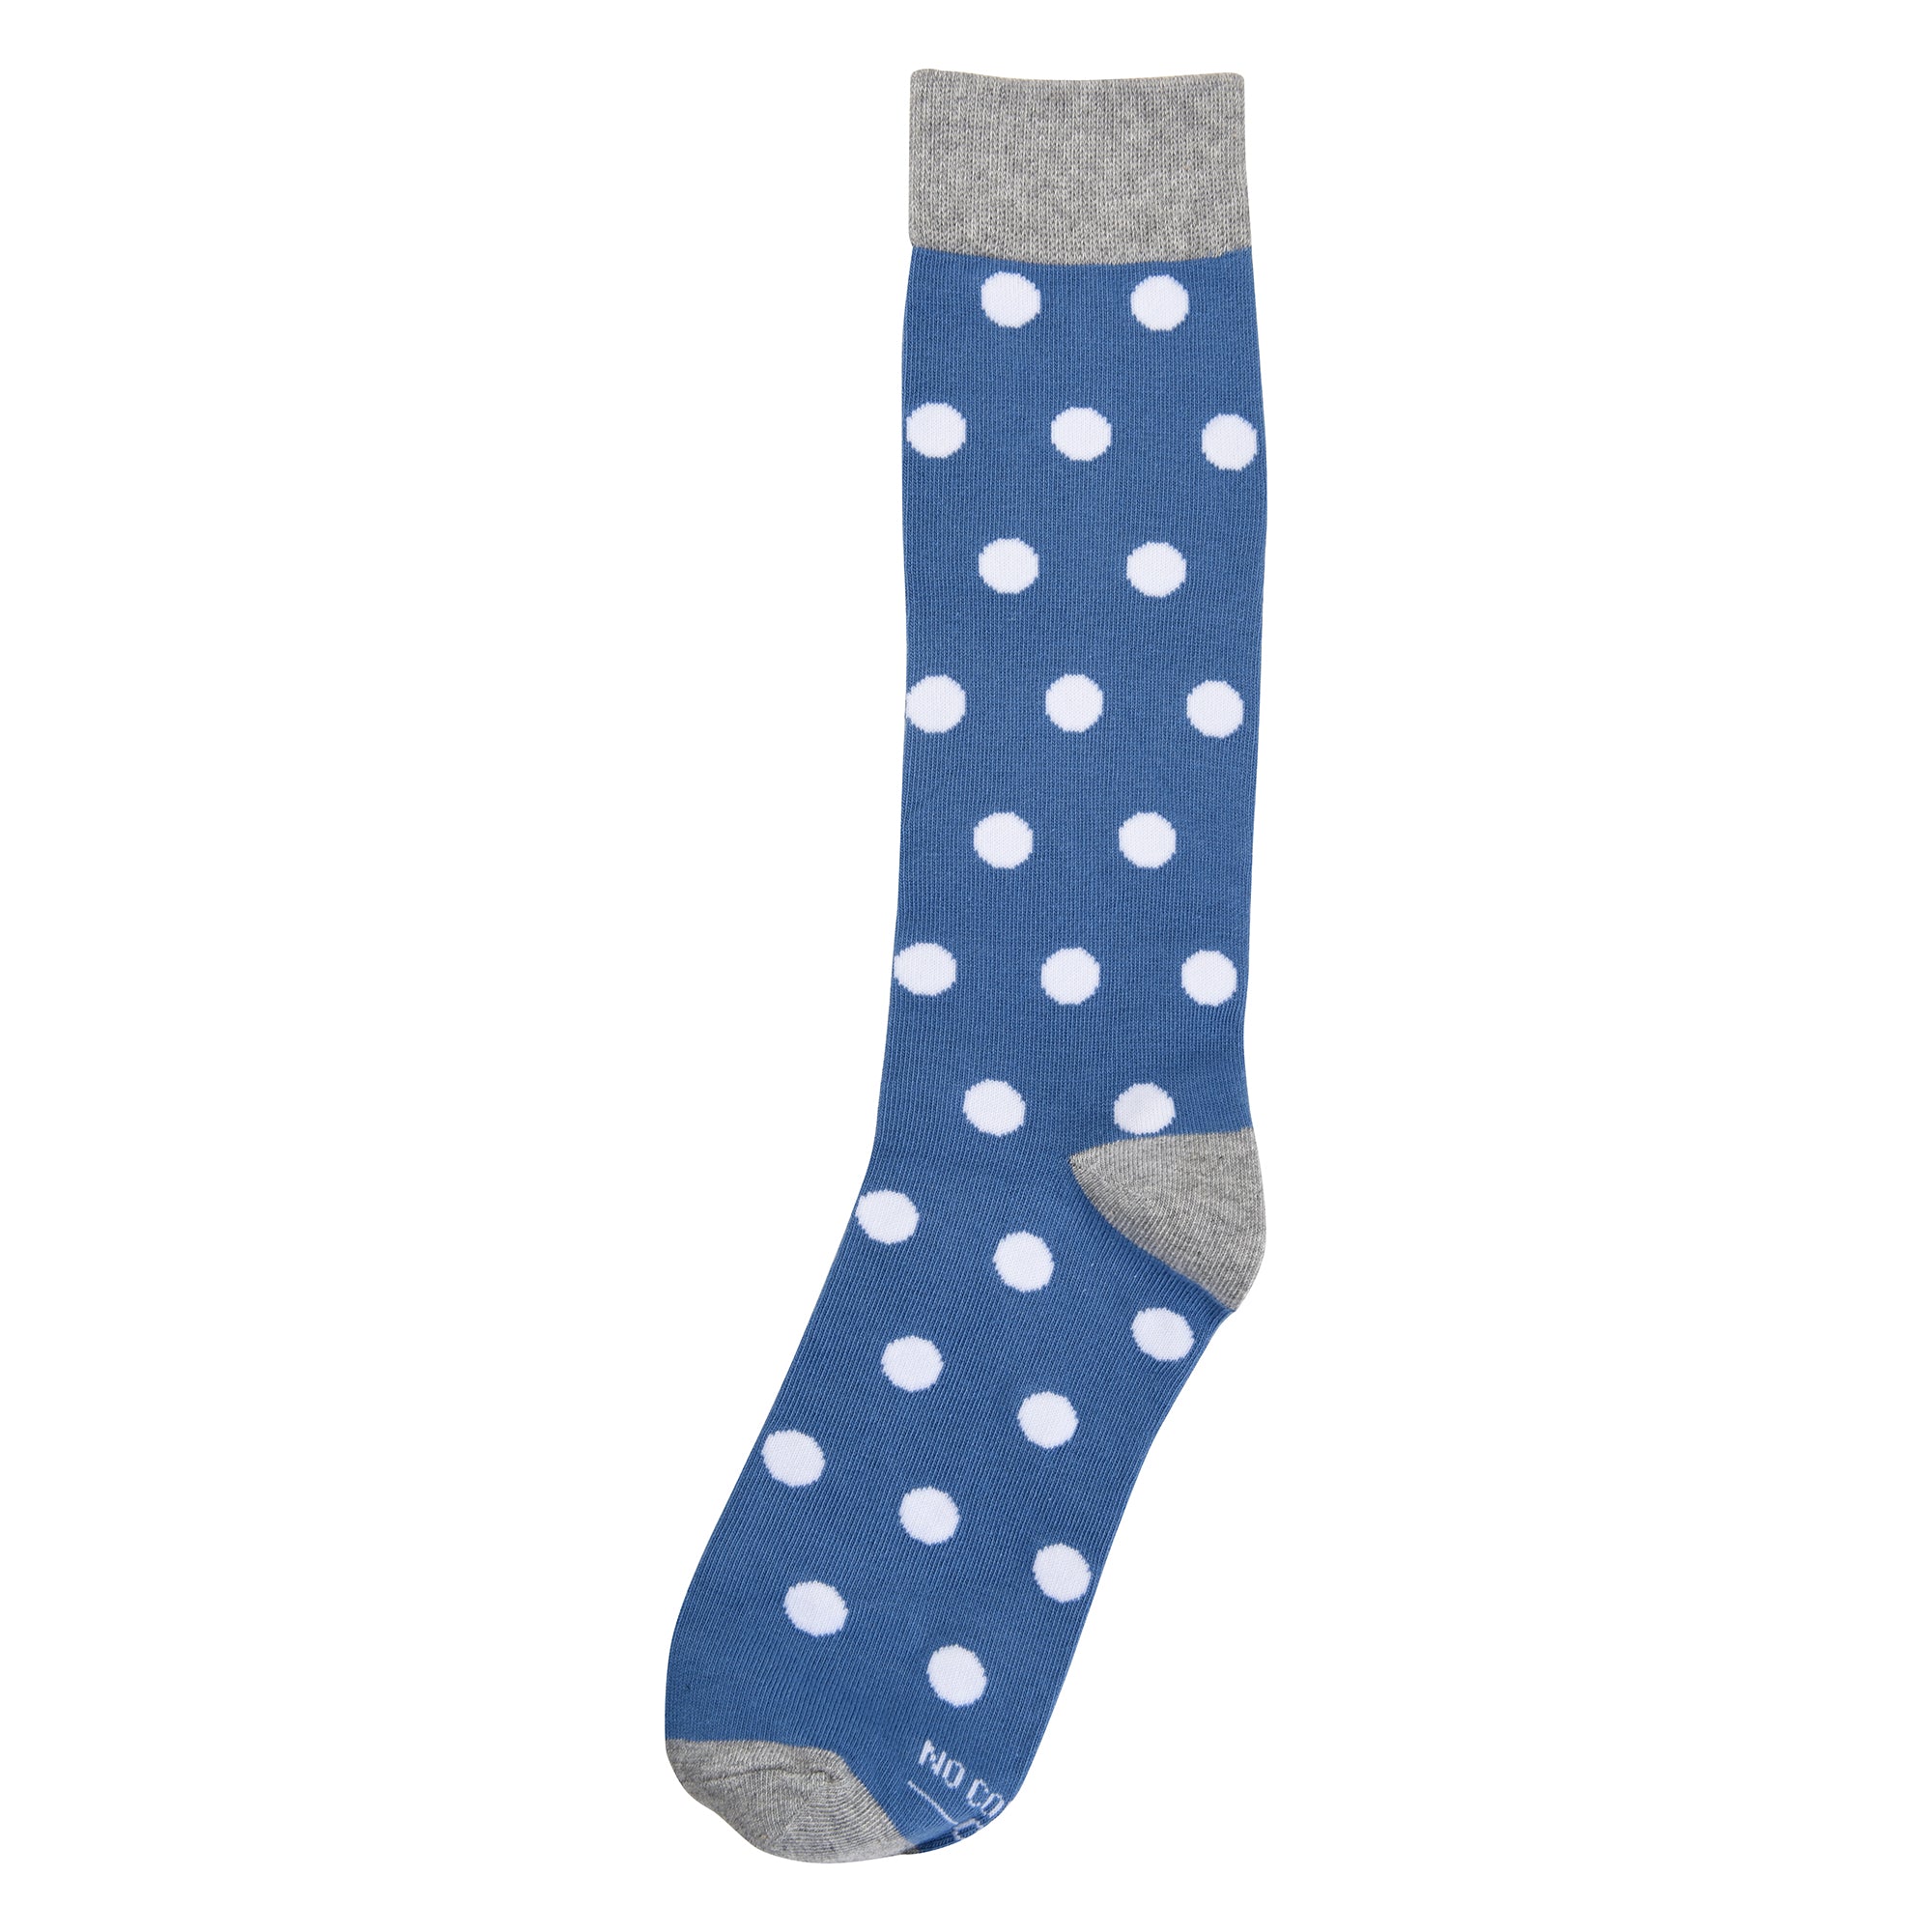 Steel Blue Socks with White Polka Dot Socks